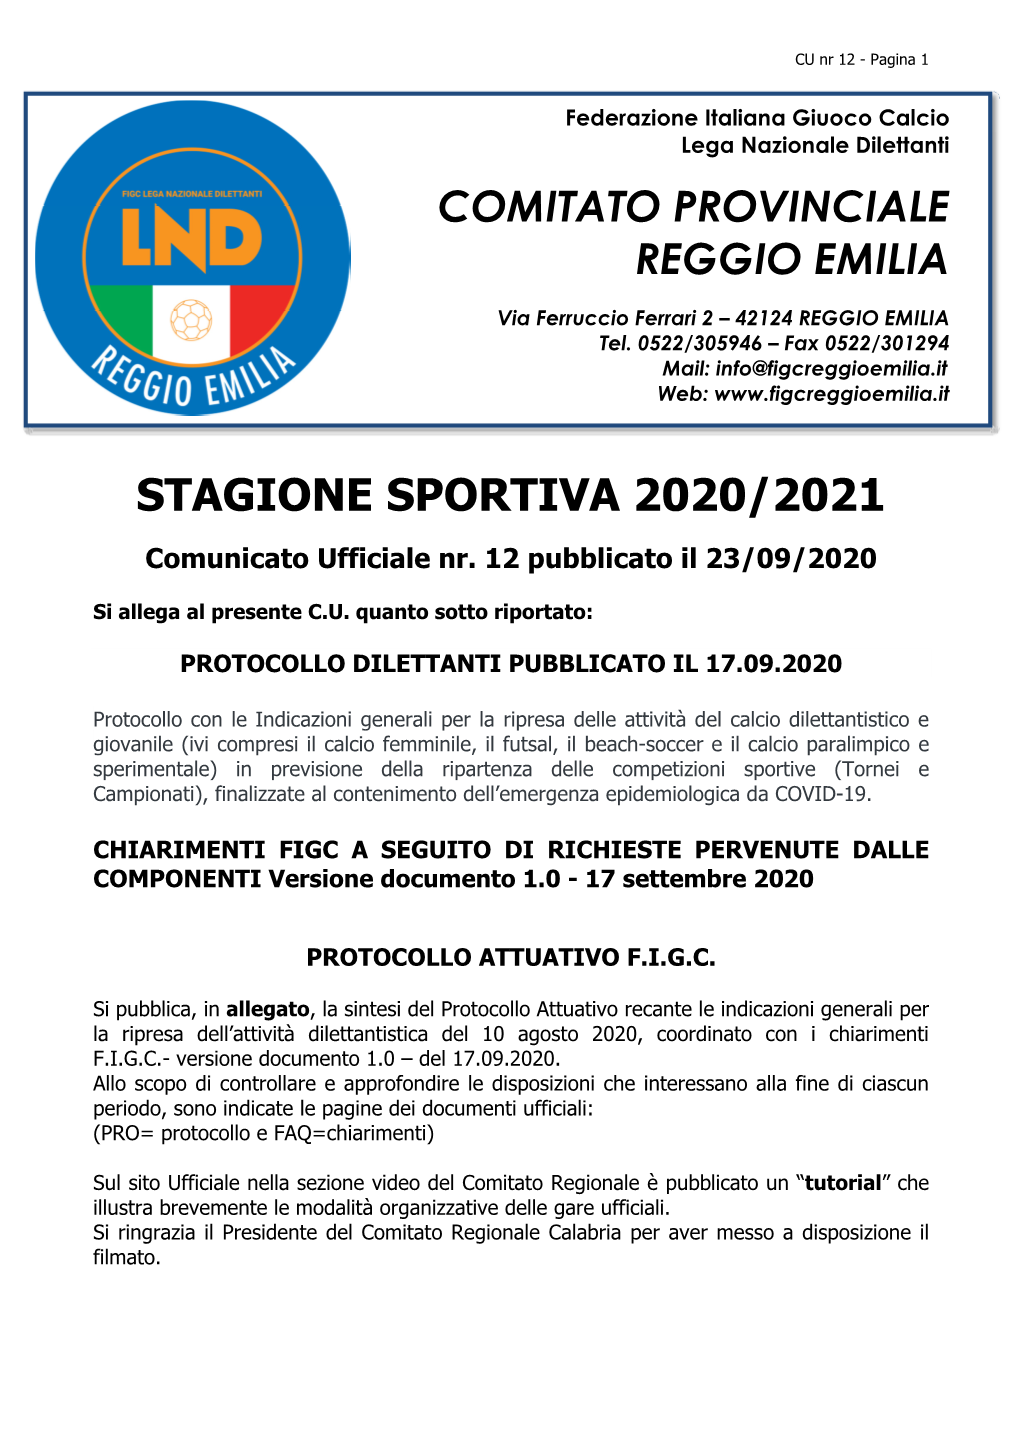 Comitato Provinciale Reggio Emilia